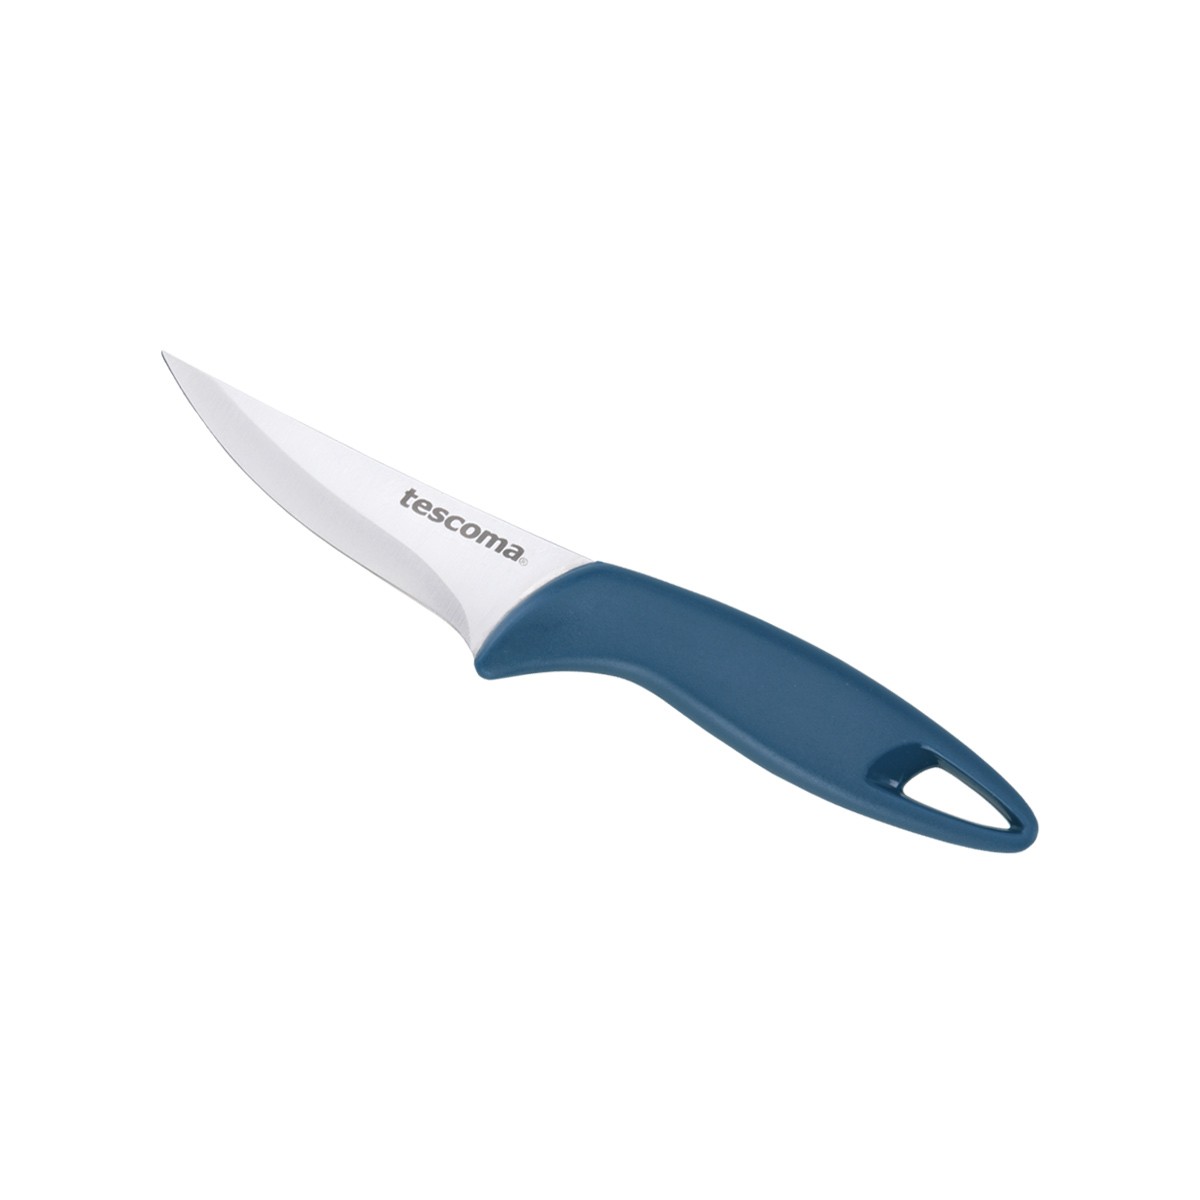 Nůž univerzální PRESTO 8 cm